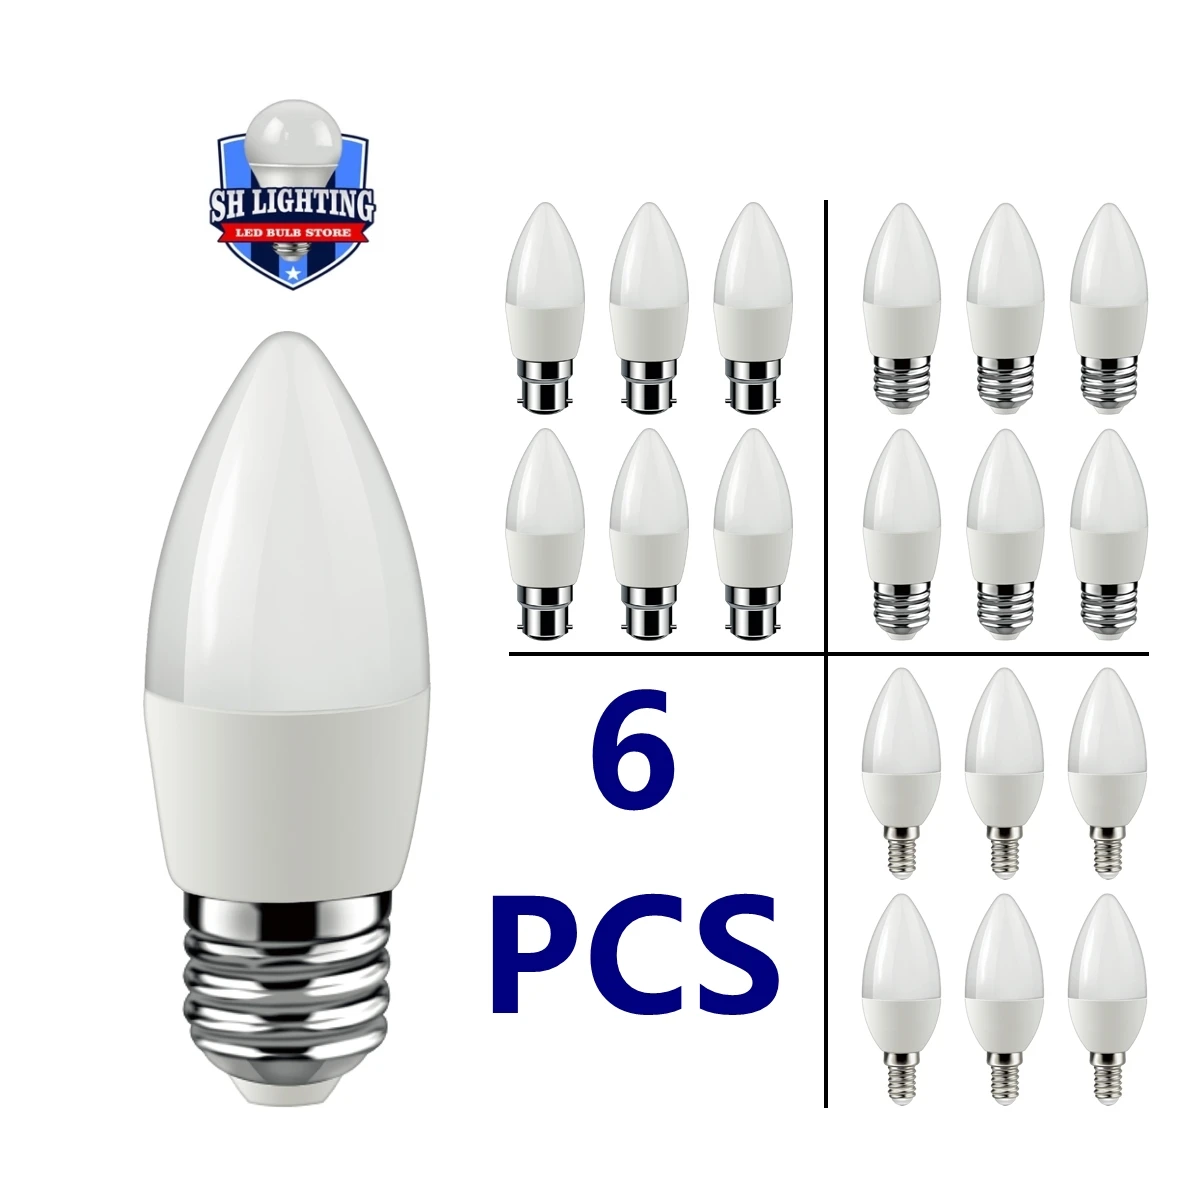 

6Pcs Led Bulb Lamps Candle min E14 E27 B22 3W 5W 6W 7W 3000k 4000k 6000k AC220v-240v Led Candle Bulb For Home Decoration Lamp